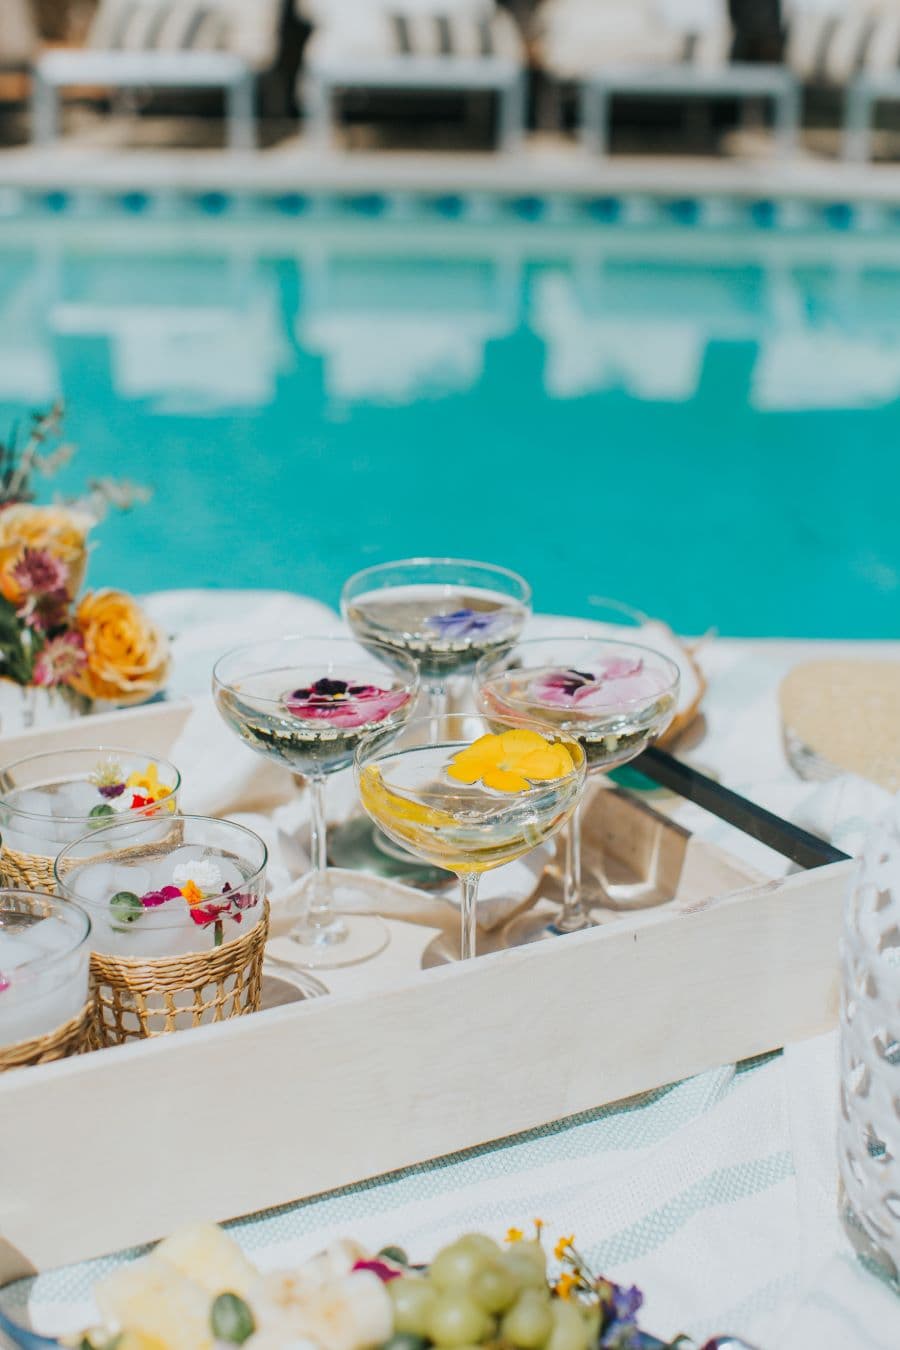 Detalle de bandeja de madera con 4 copas de martini con hielos con flores comestibles. 4 vasos altos con agua. Toso está sobre una toalla blanca y celeste. Atrás se ve una piscina con el reflejo de unas reposeras.